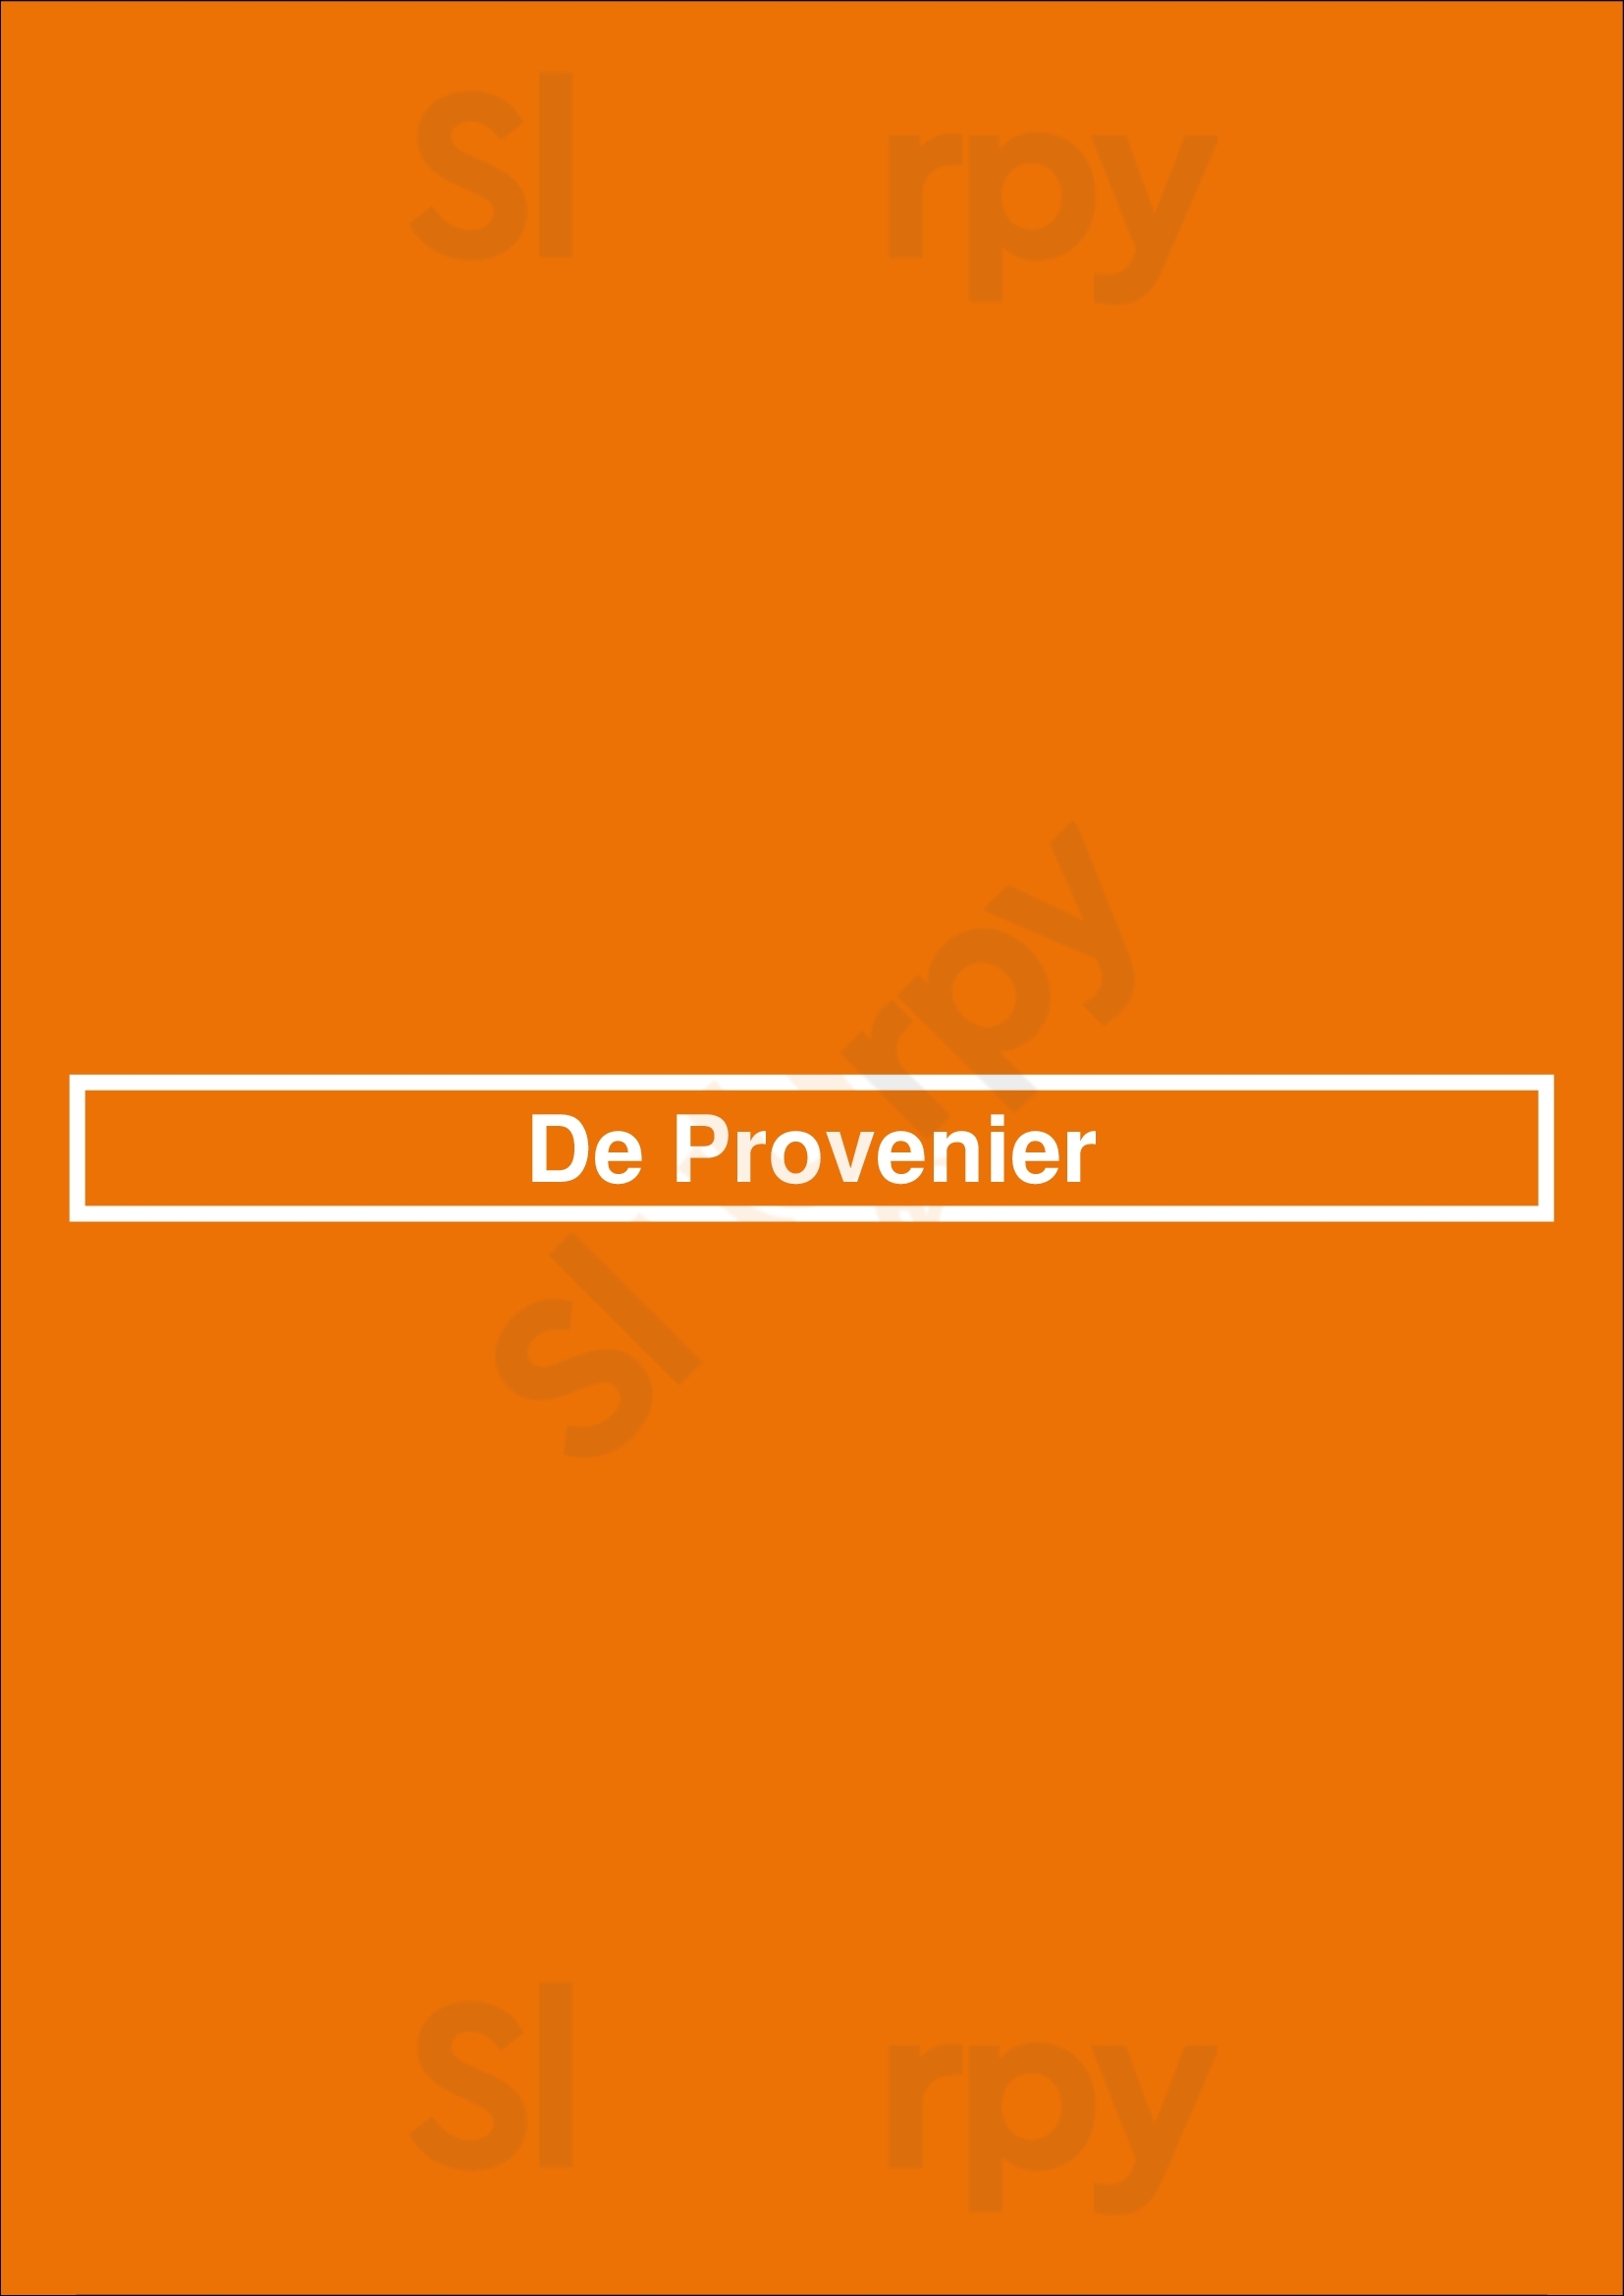 De Provenier Schiedam Menu - 1